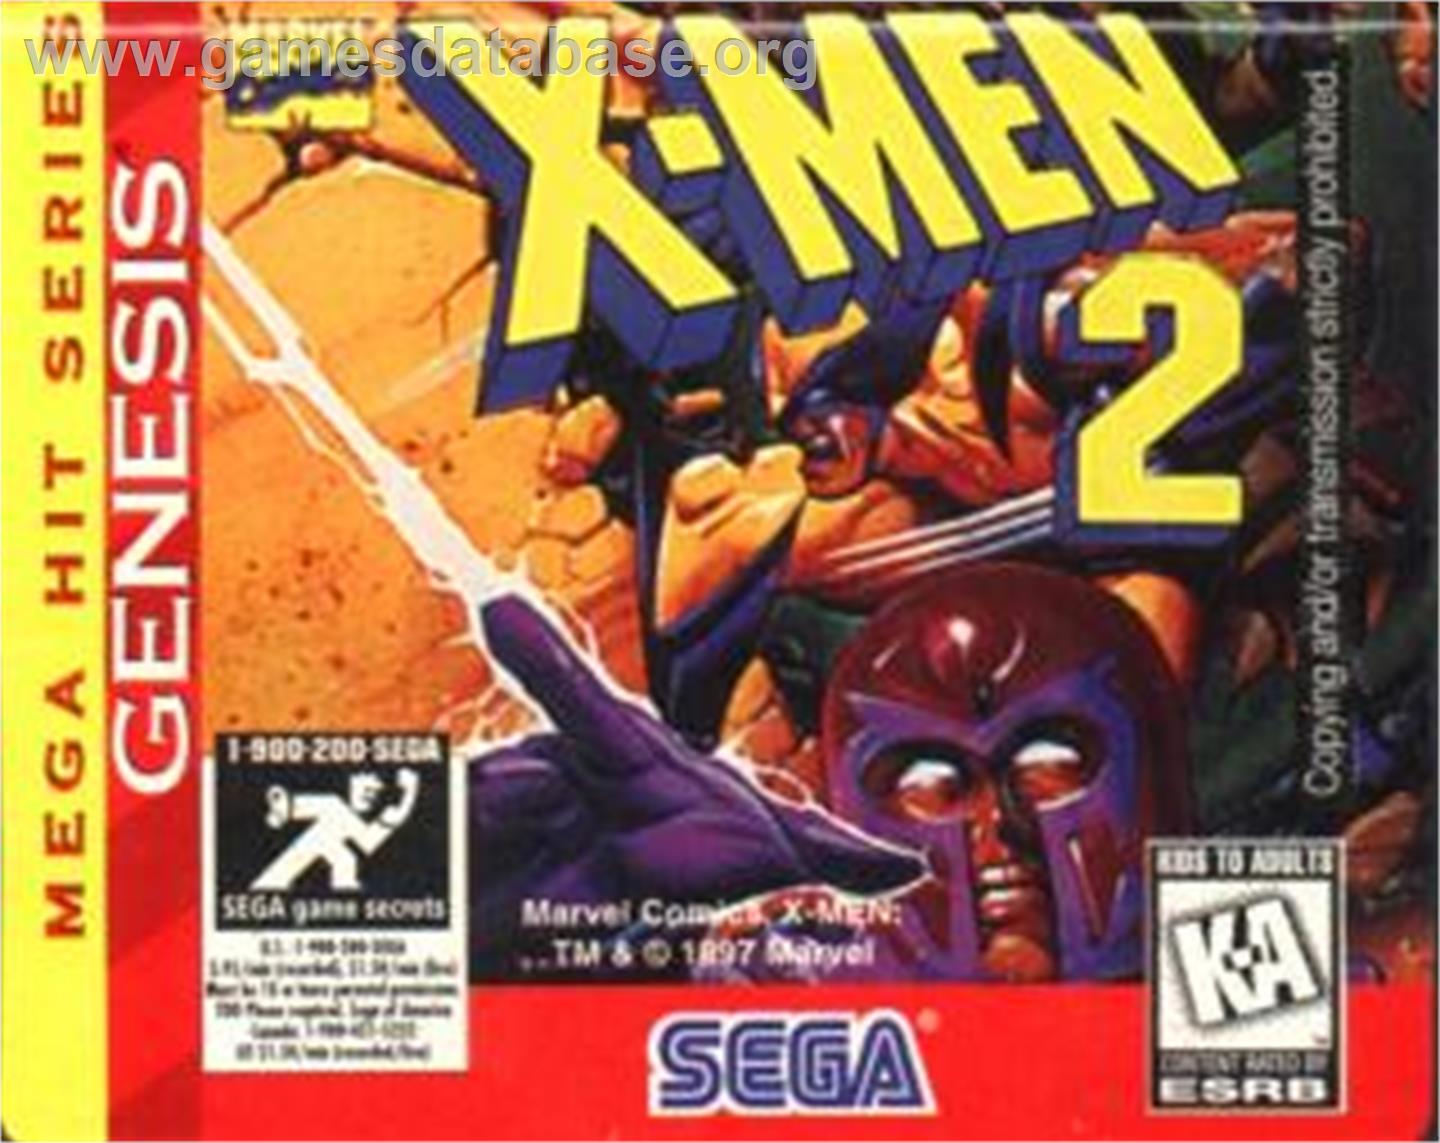 X-Men 2: Clone Wars - Sega Nomad - Artwork - Cartridge